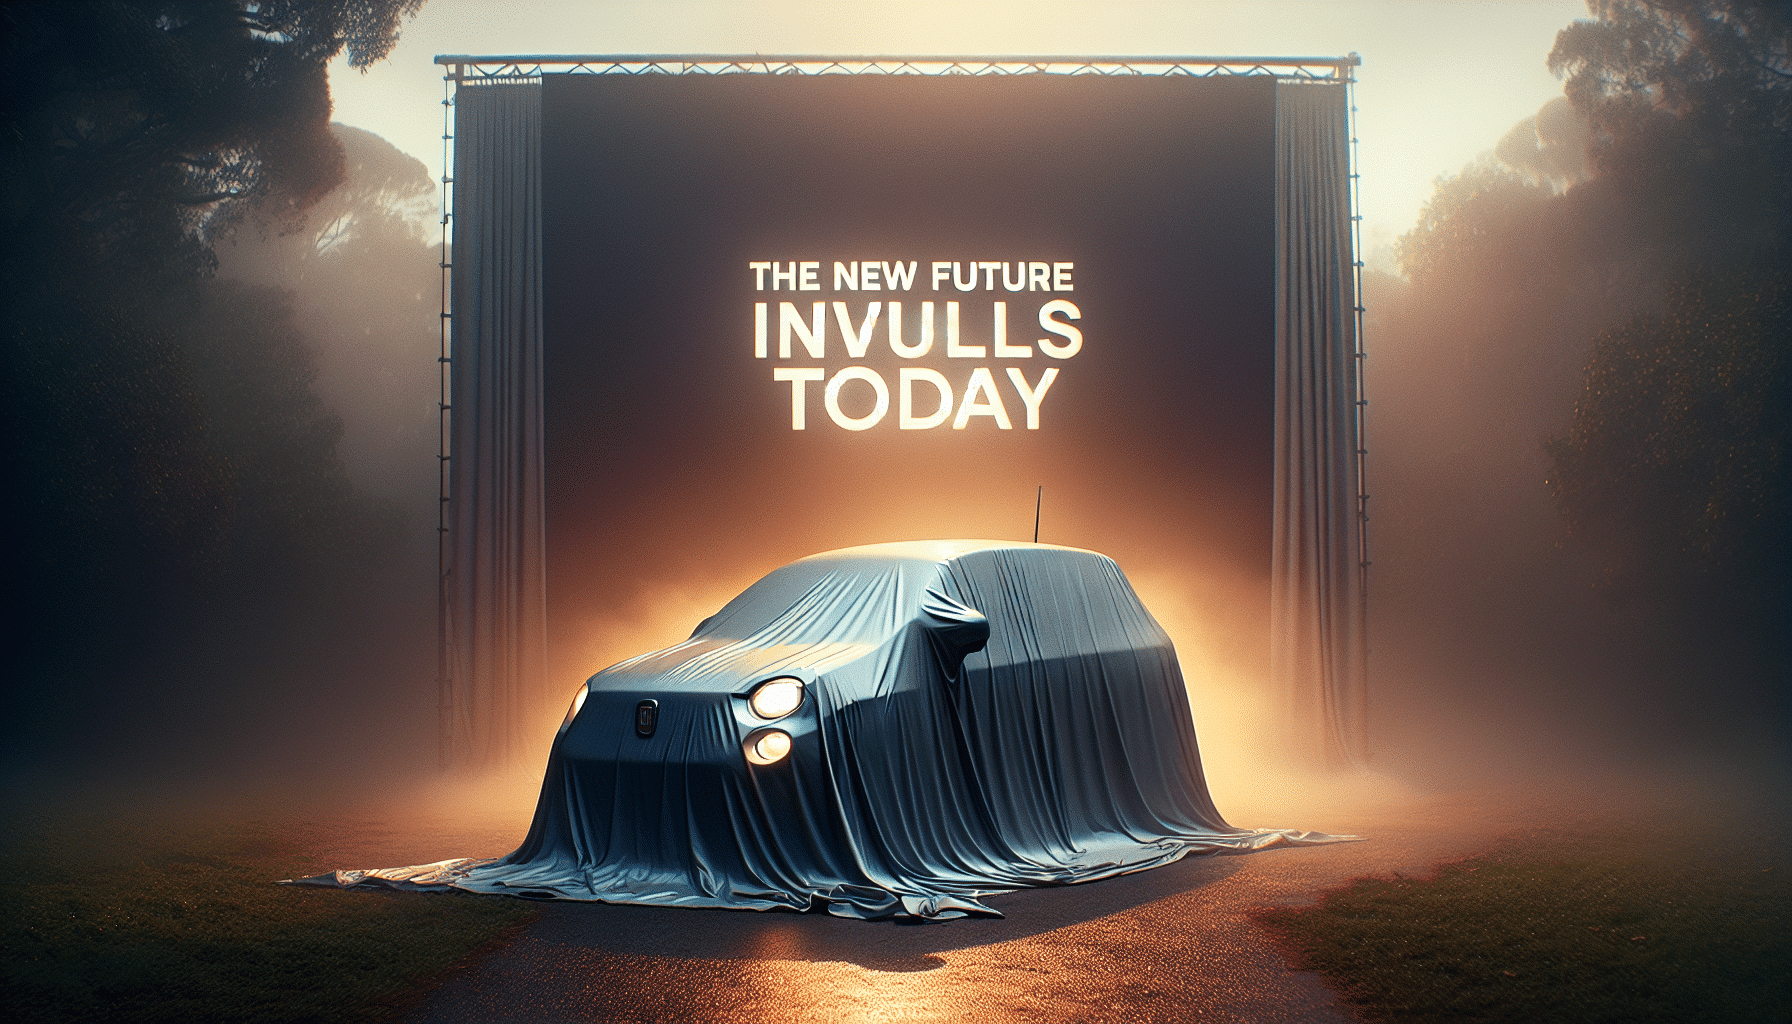 descubre hoy el emocionante nuevo futuro de fiat y prepárate para un viaje de innovación y estilo en el mundo automotriz.